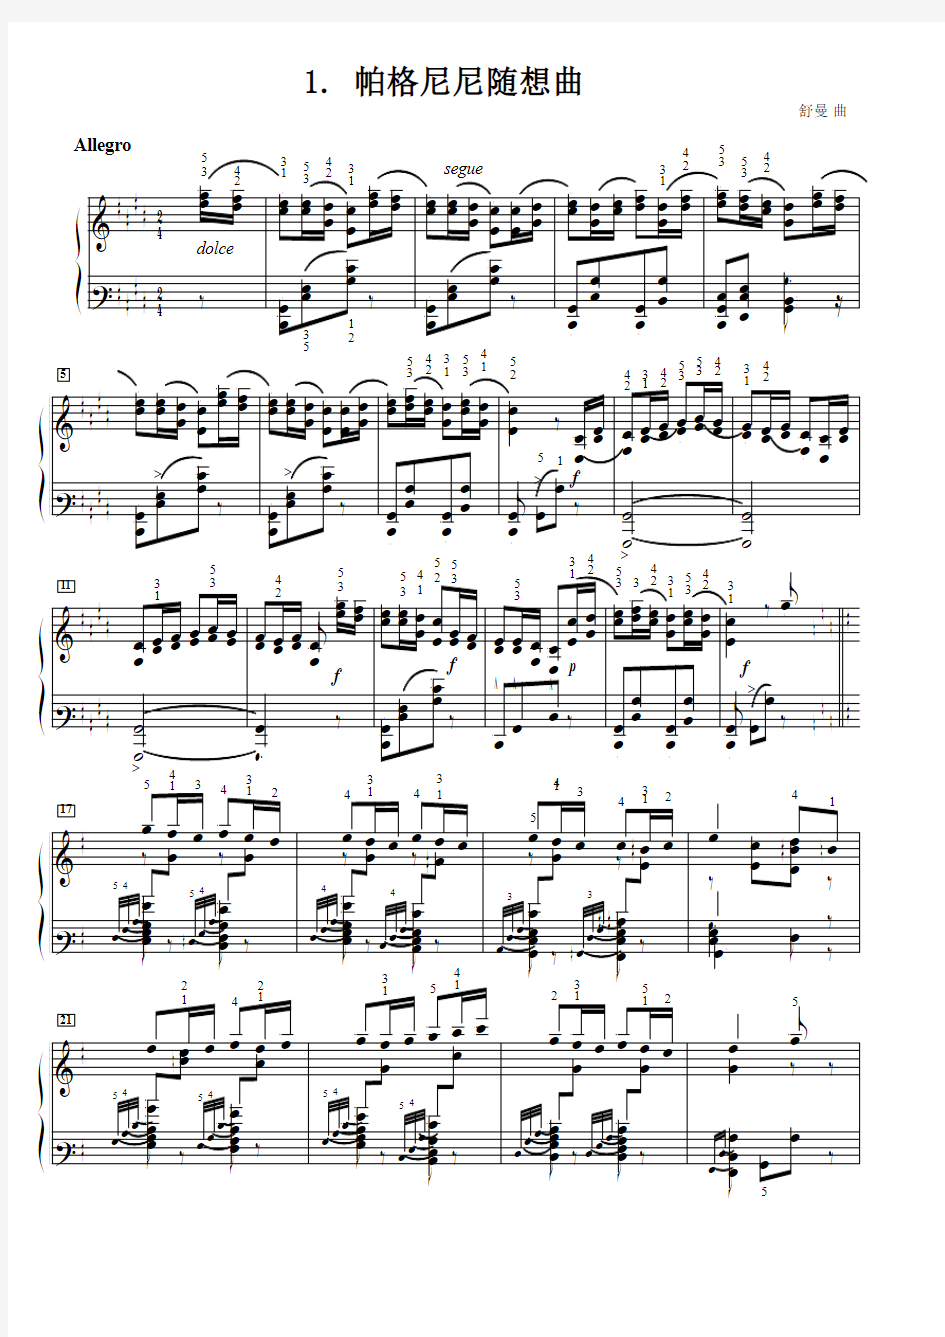 帕格尼尼随想曲 舒曼 原版 五线谱 钢琴谱 正谱  乐谱